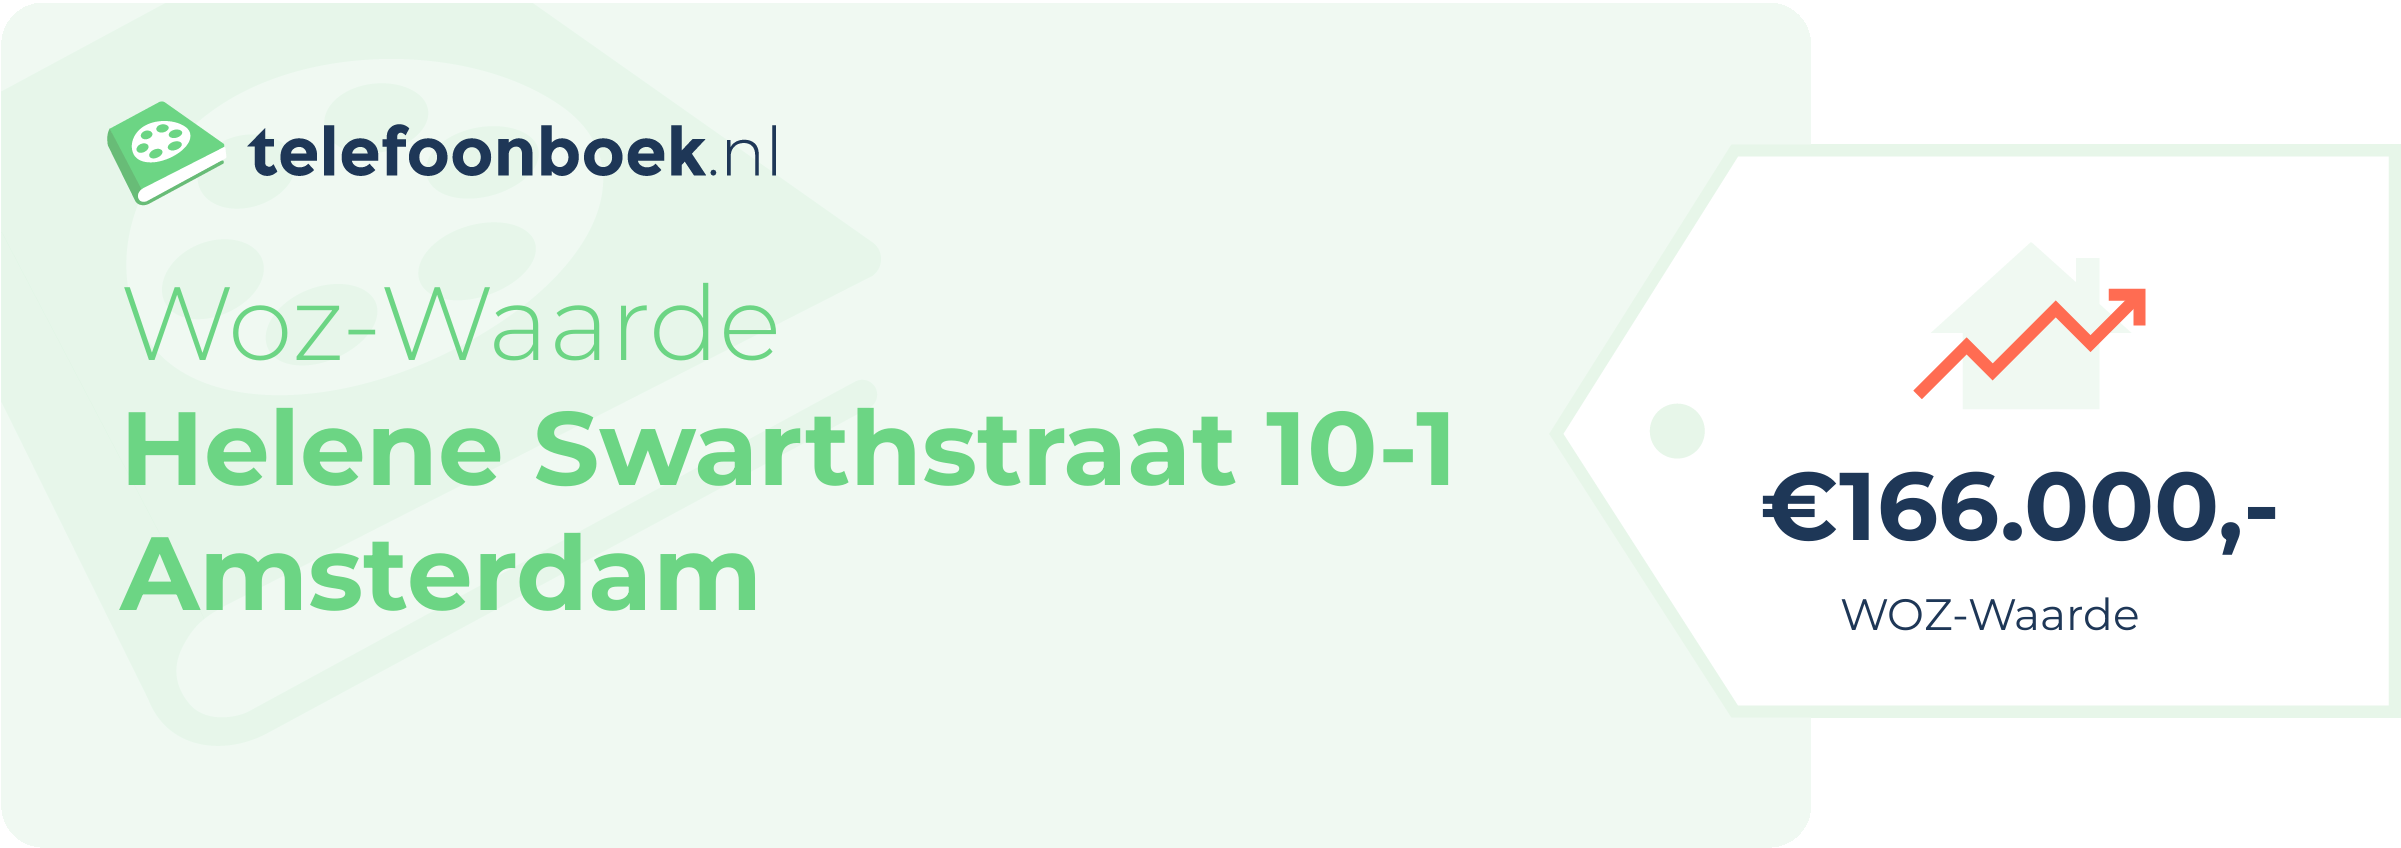 WOZ-waarde Helene Swarthstraat 10-1 Amsterdam